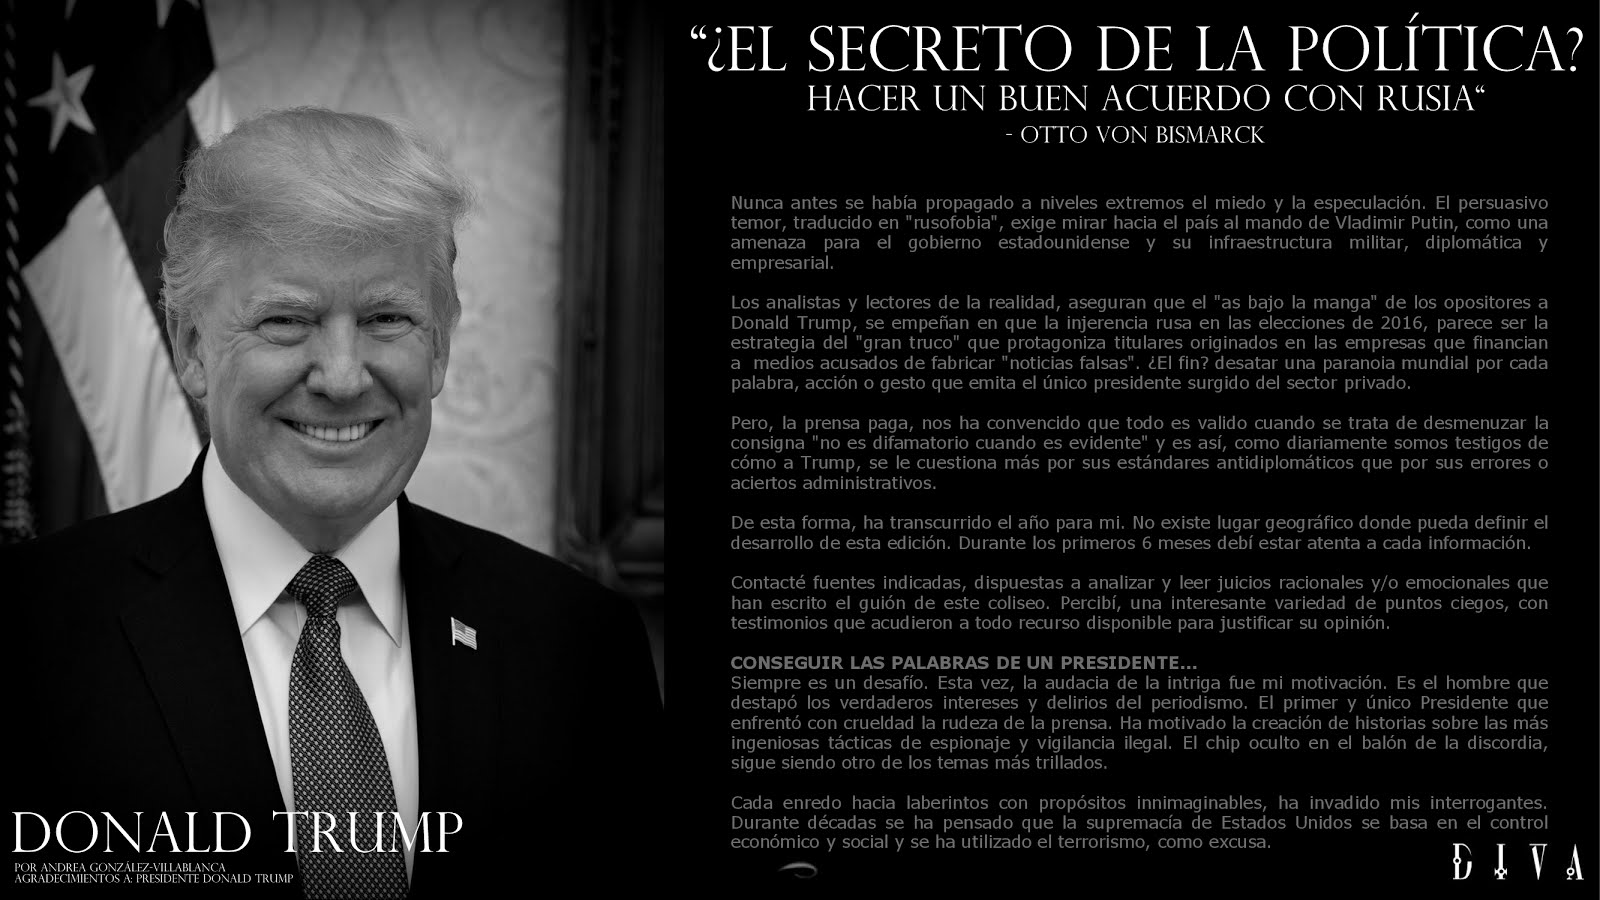 ¡EXCLUSIVO! • ¿El buen acuerdo? de Donald Trump